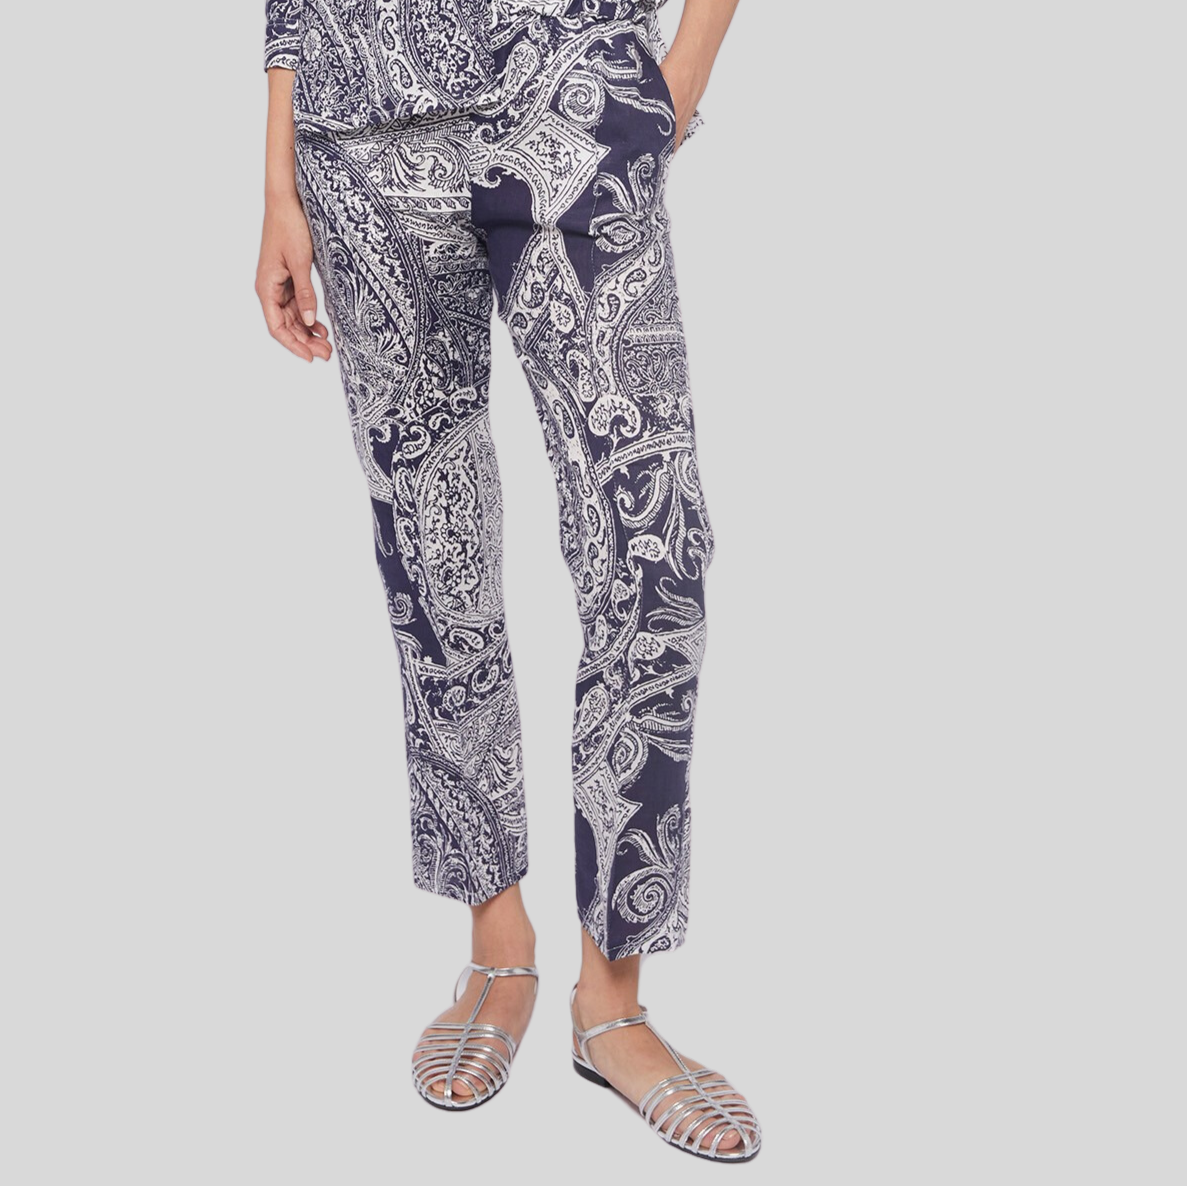 Gotstyle Fashion - Vilagallo Pants Paisley Print Linen Pants - Navy